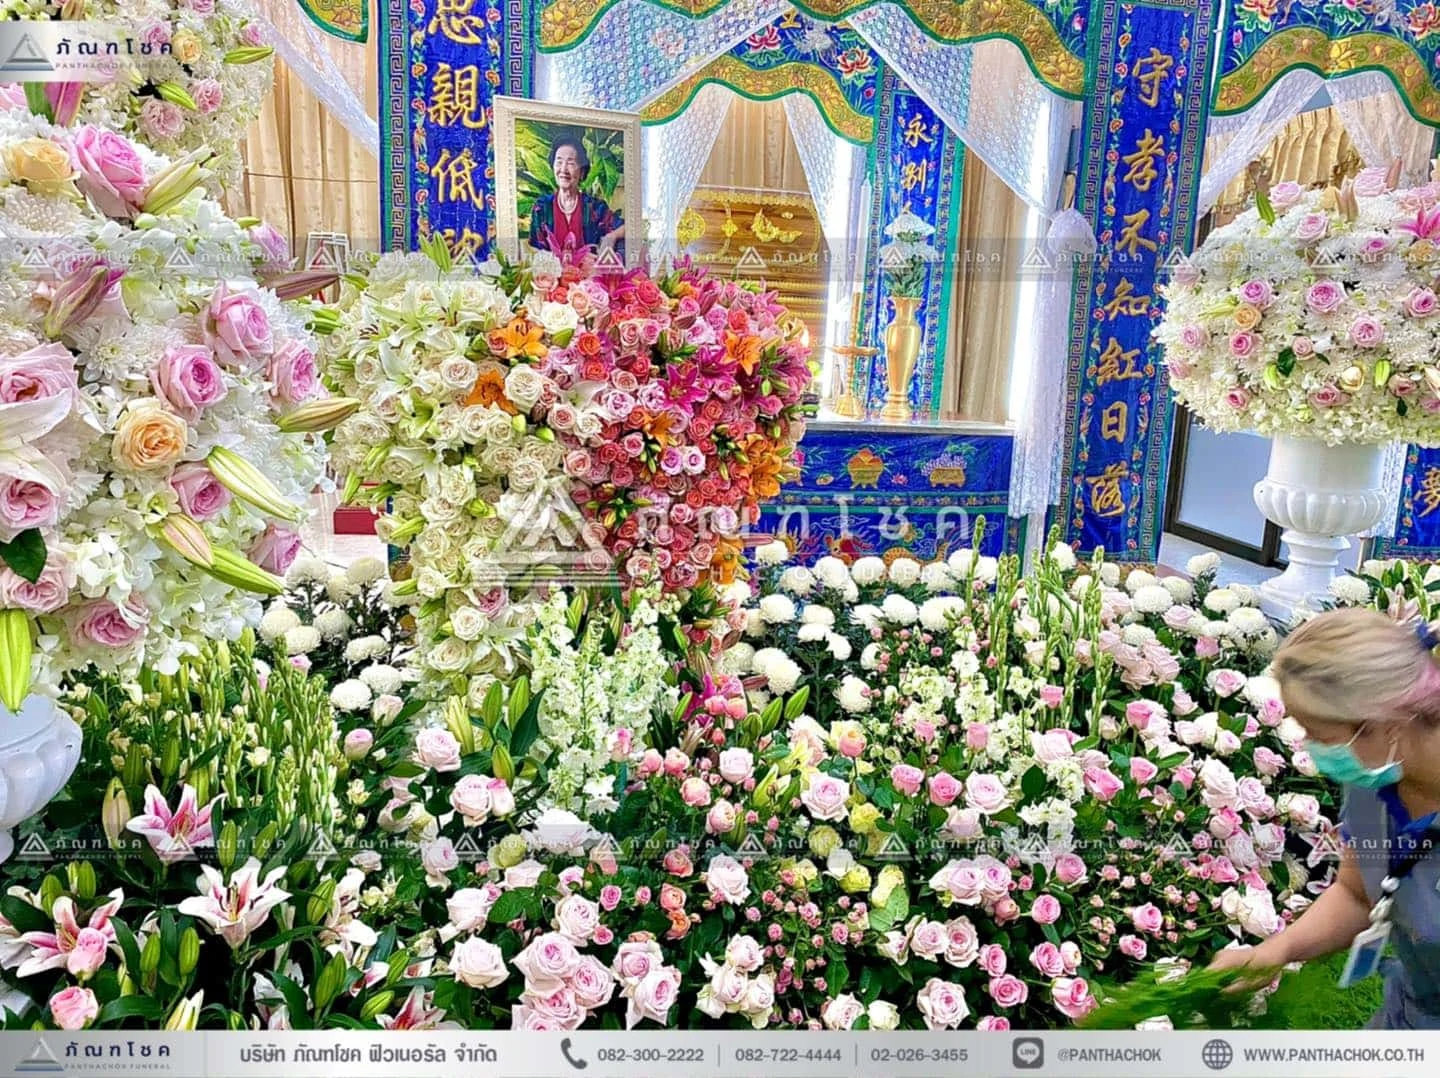 ดอกไม้หน้าหีบศพแบบจีน โทนสีขาว รับจัดงานศพกรุงเทพ ดอกไม้งานศพ จัดงานศพแบบเรียบง่าย ดอกไม้หน้าศพสวยๆ